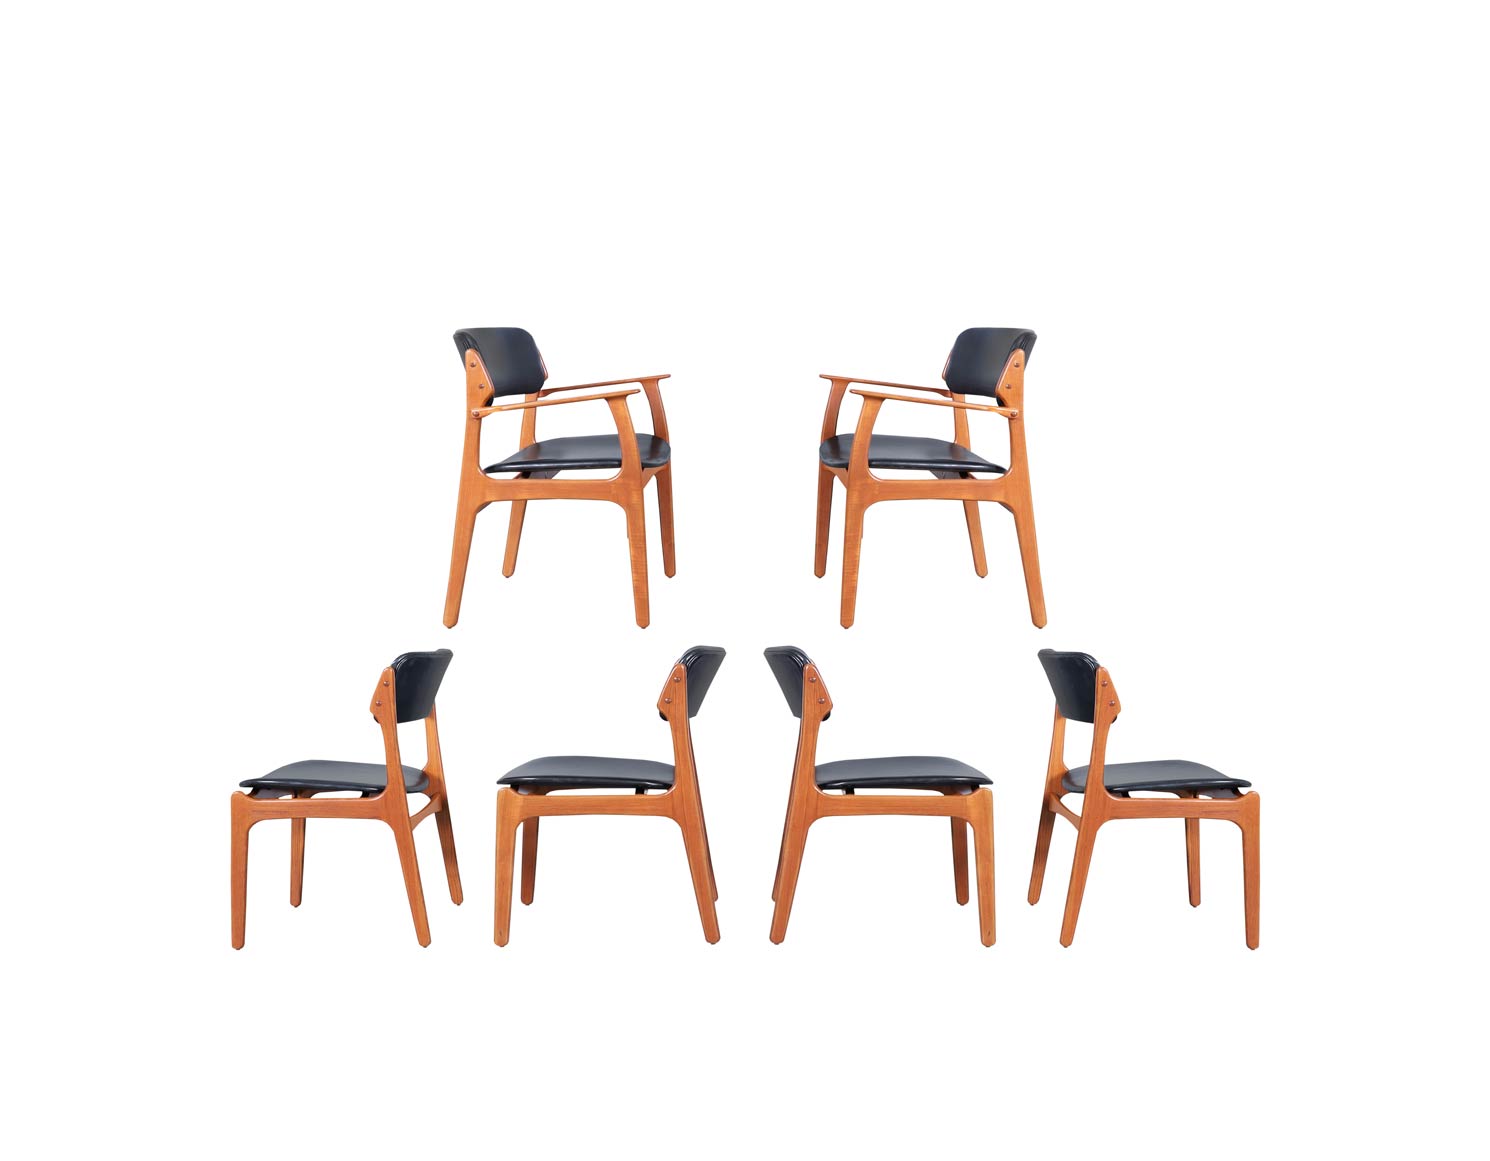 Danish Teak Dining Chairs Model OD-49 by Erik Buch for Oddense Maskinsnedkeri